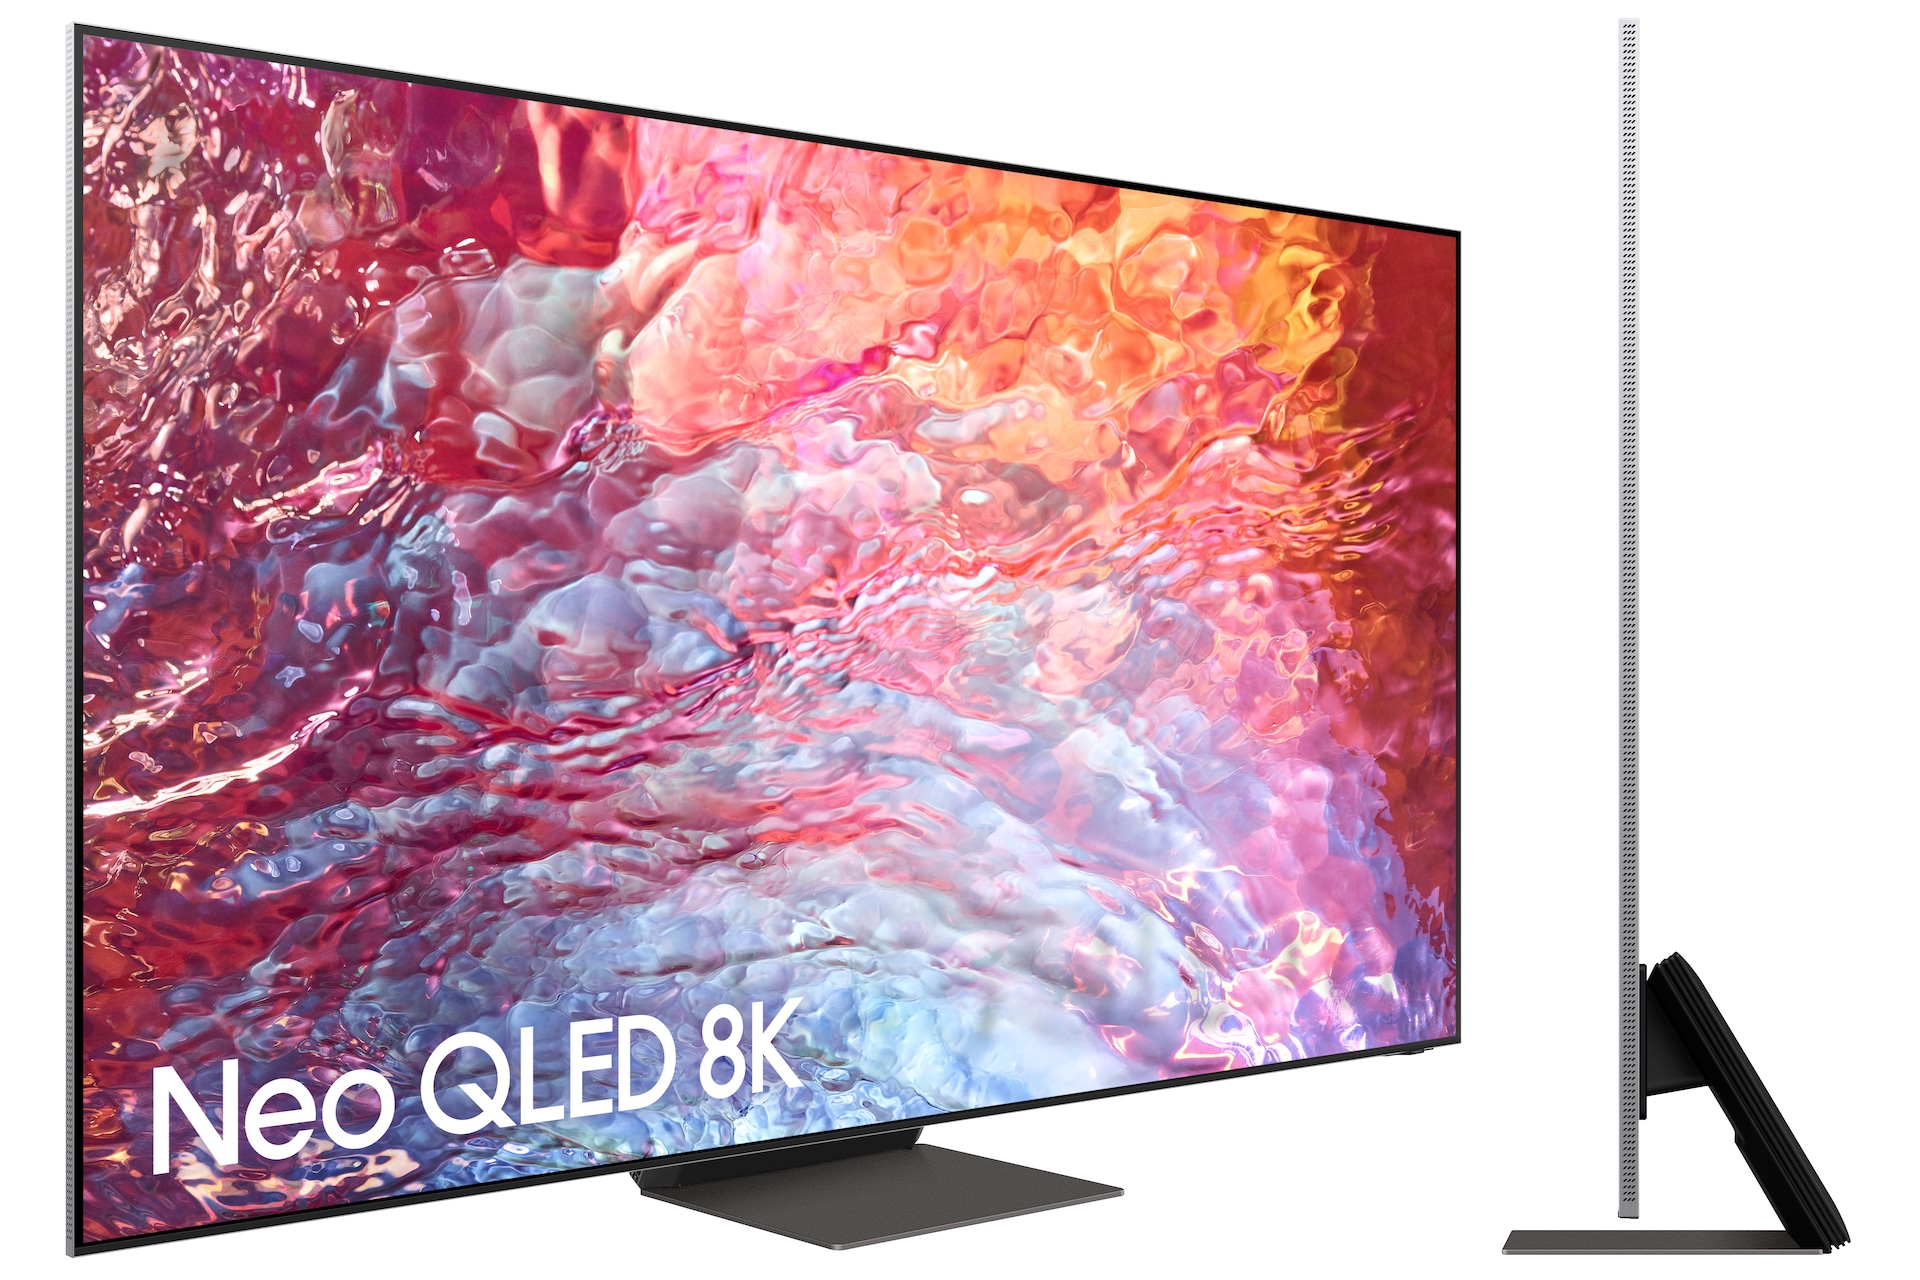 Las mejores ofertas en Samsung LED 1080p (FHD) resolución máxima televisores  de pantalla plana